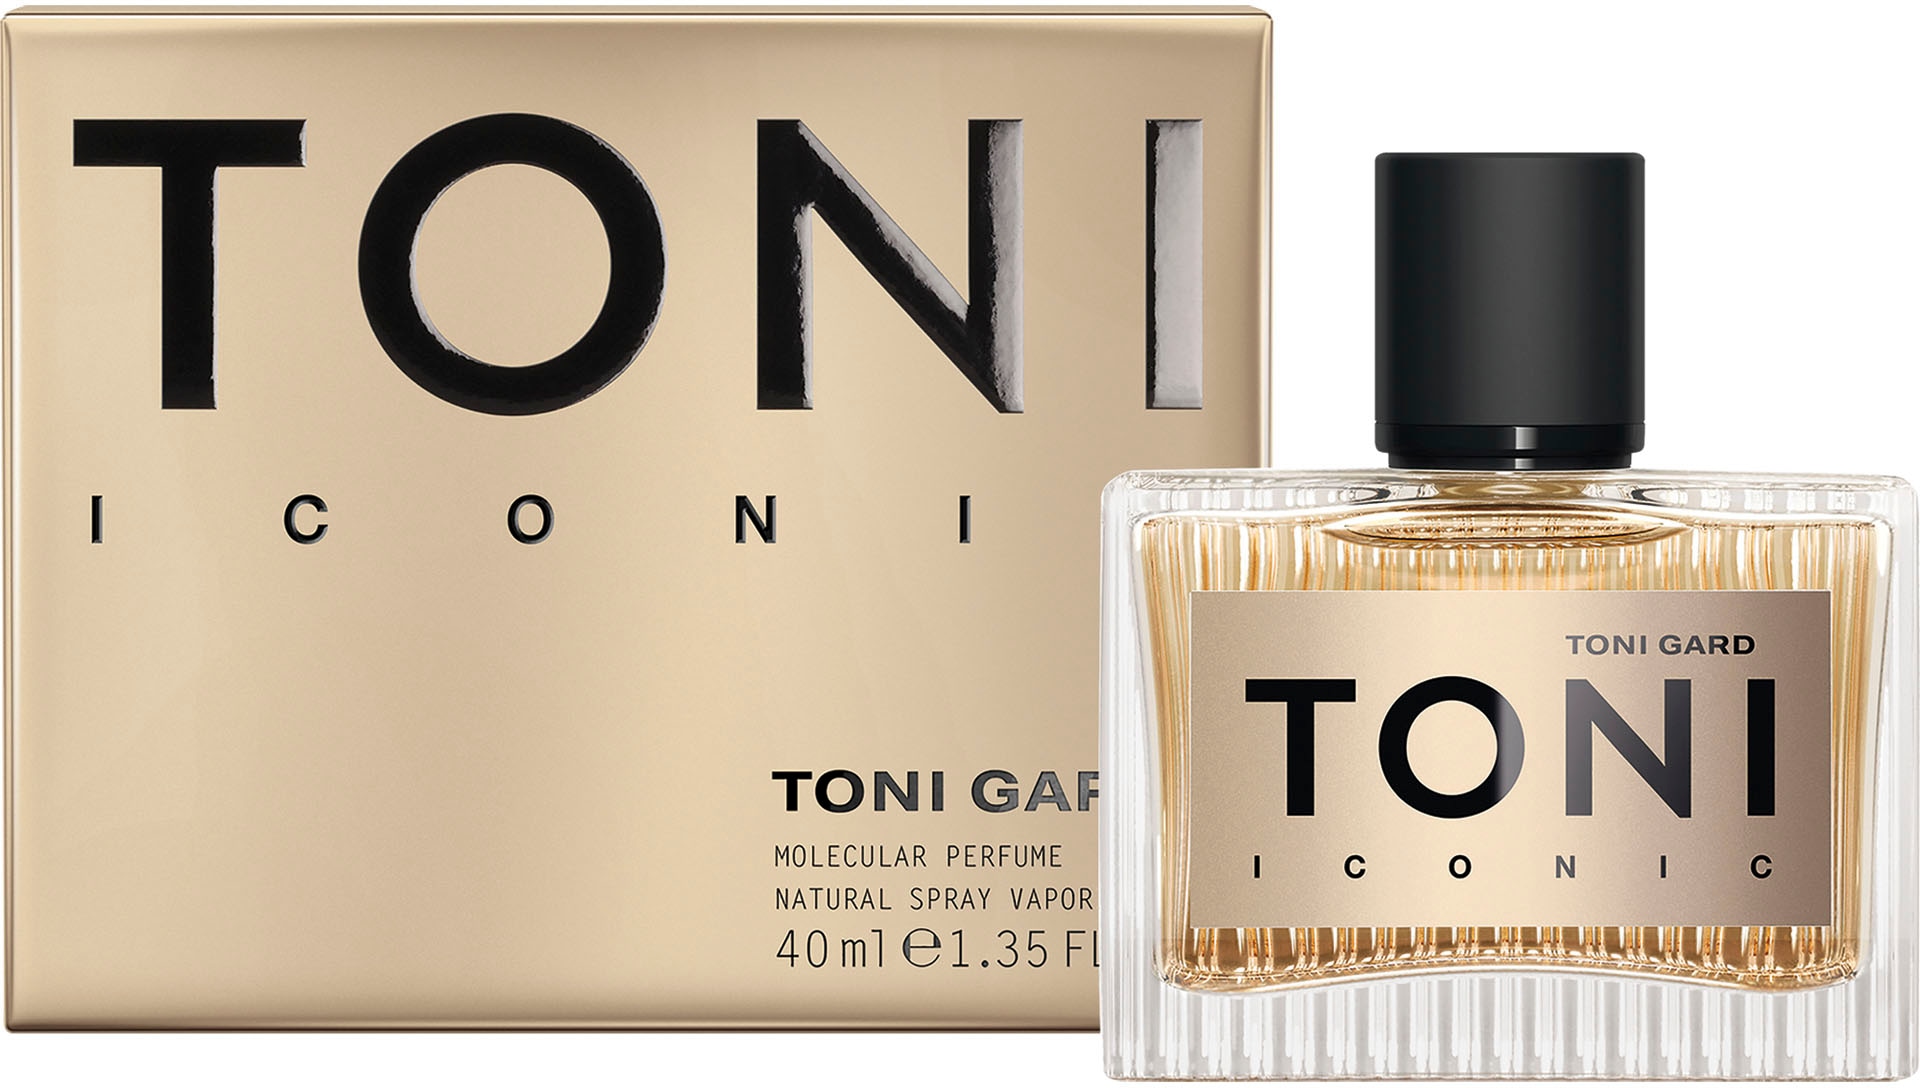 TONI GARD Parfum kaufen »ICONIC de Eau UNIVERSAL | EdP« online